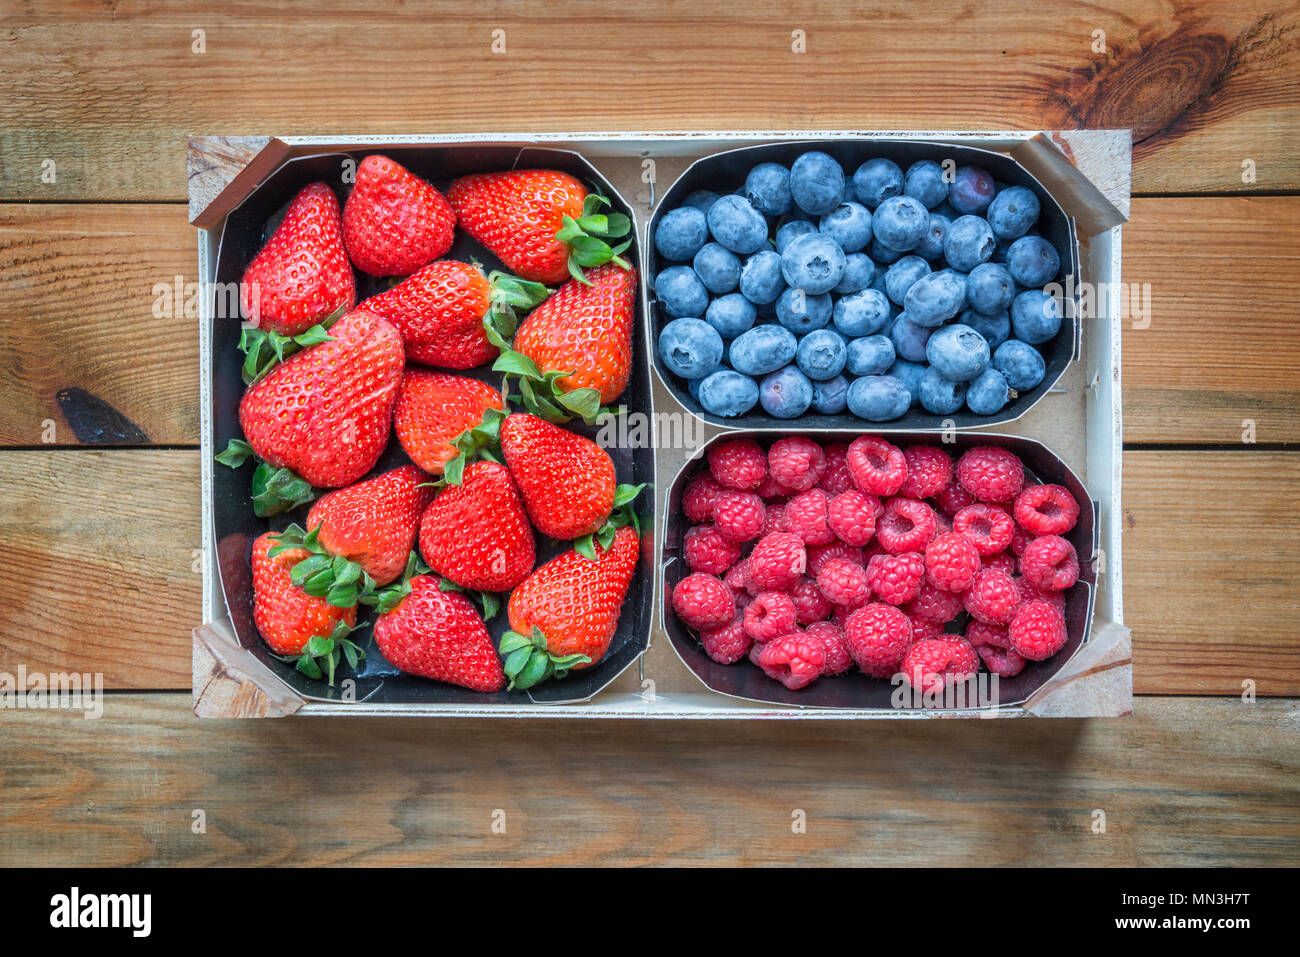 Mélange de fruits biologiques. Paniers de framboises, bleuets, fraises sur table en bois, vue du dessus Banque D'Images